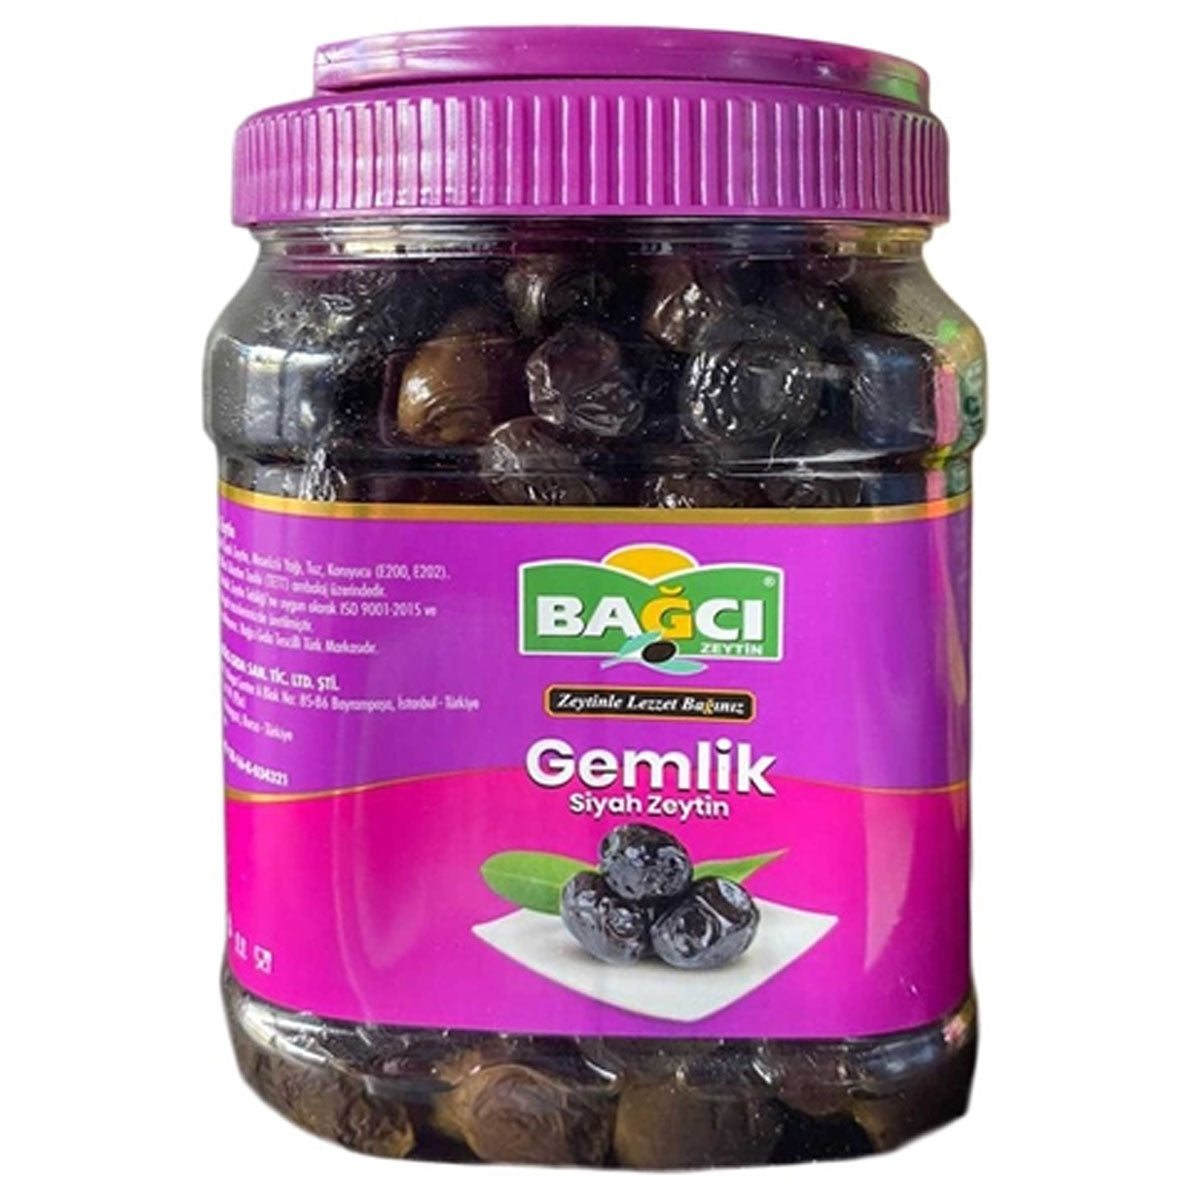 Bagci - Black Olives - 700g - Continental Food Store